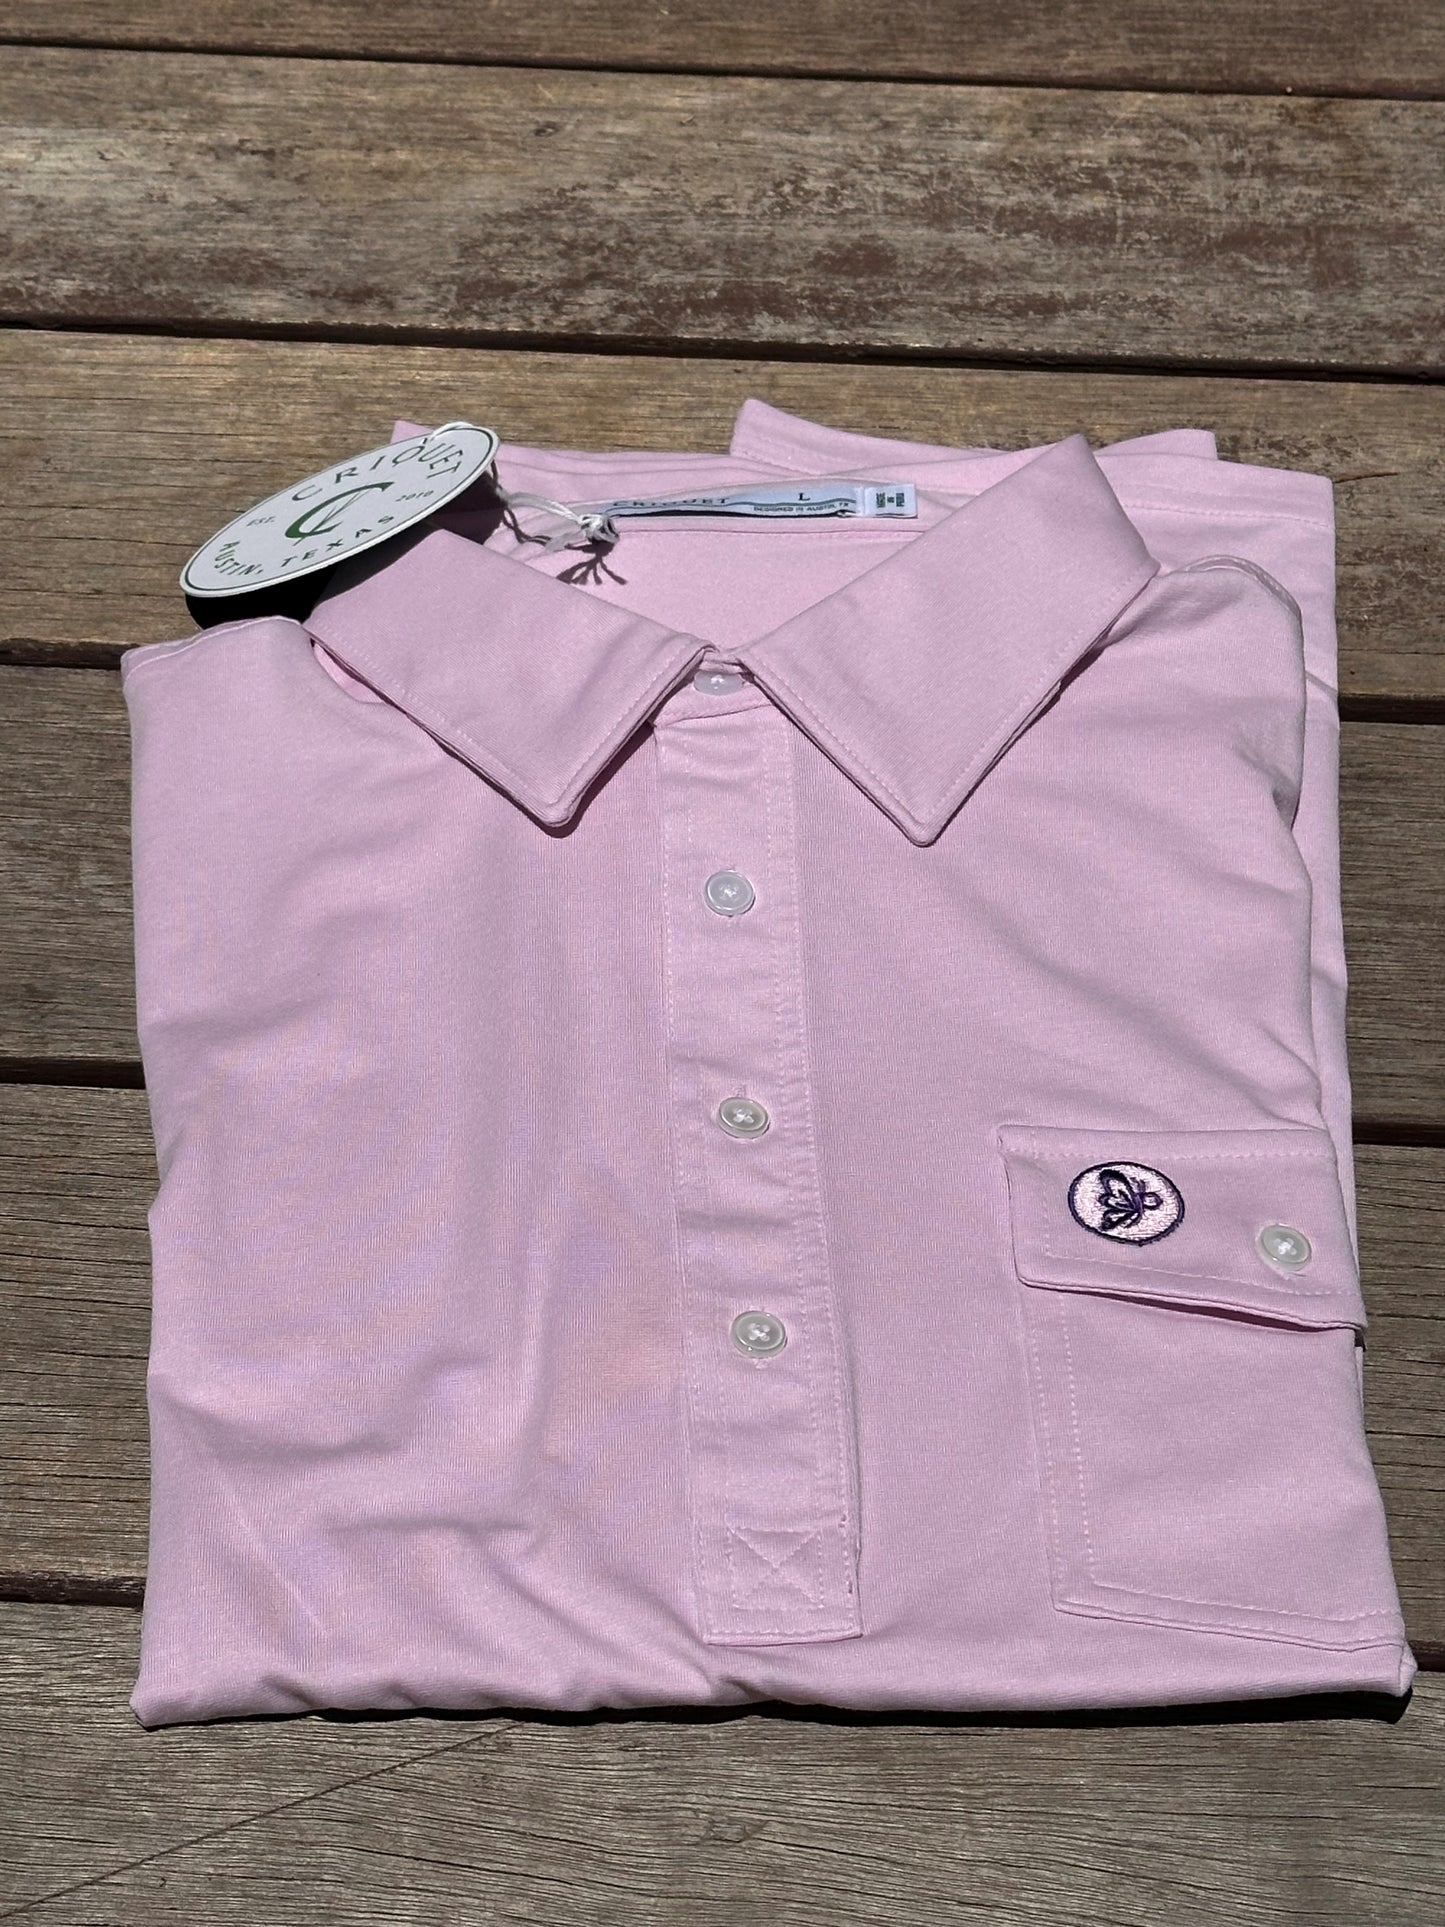 CRIQUET PFF Golf Shirt